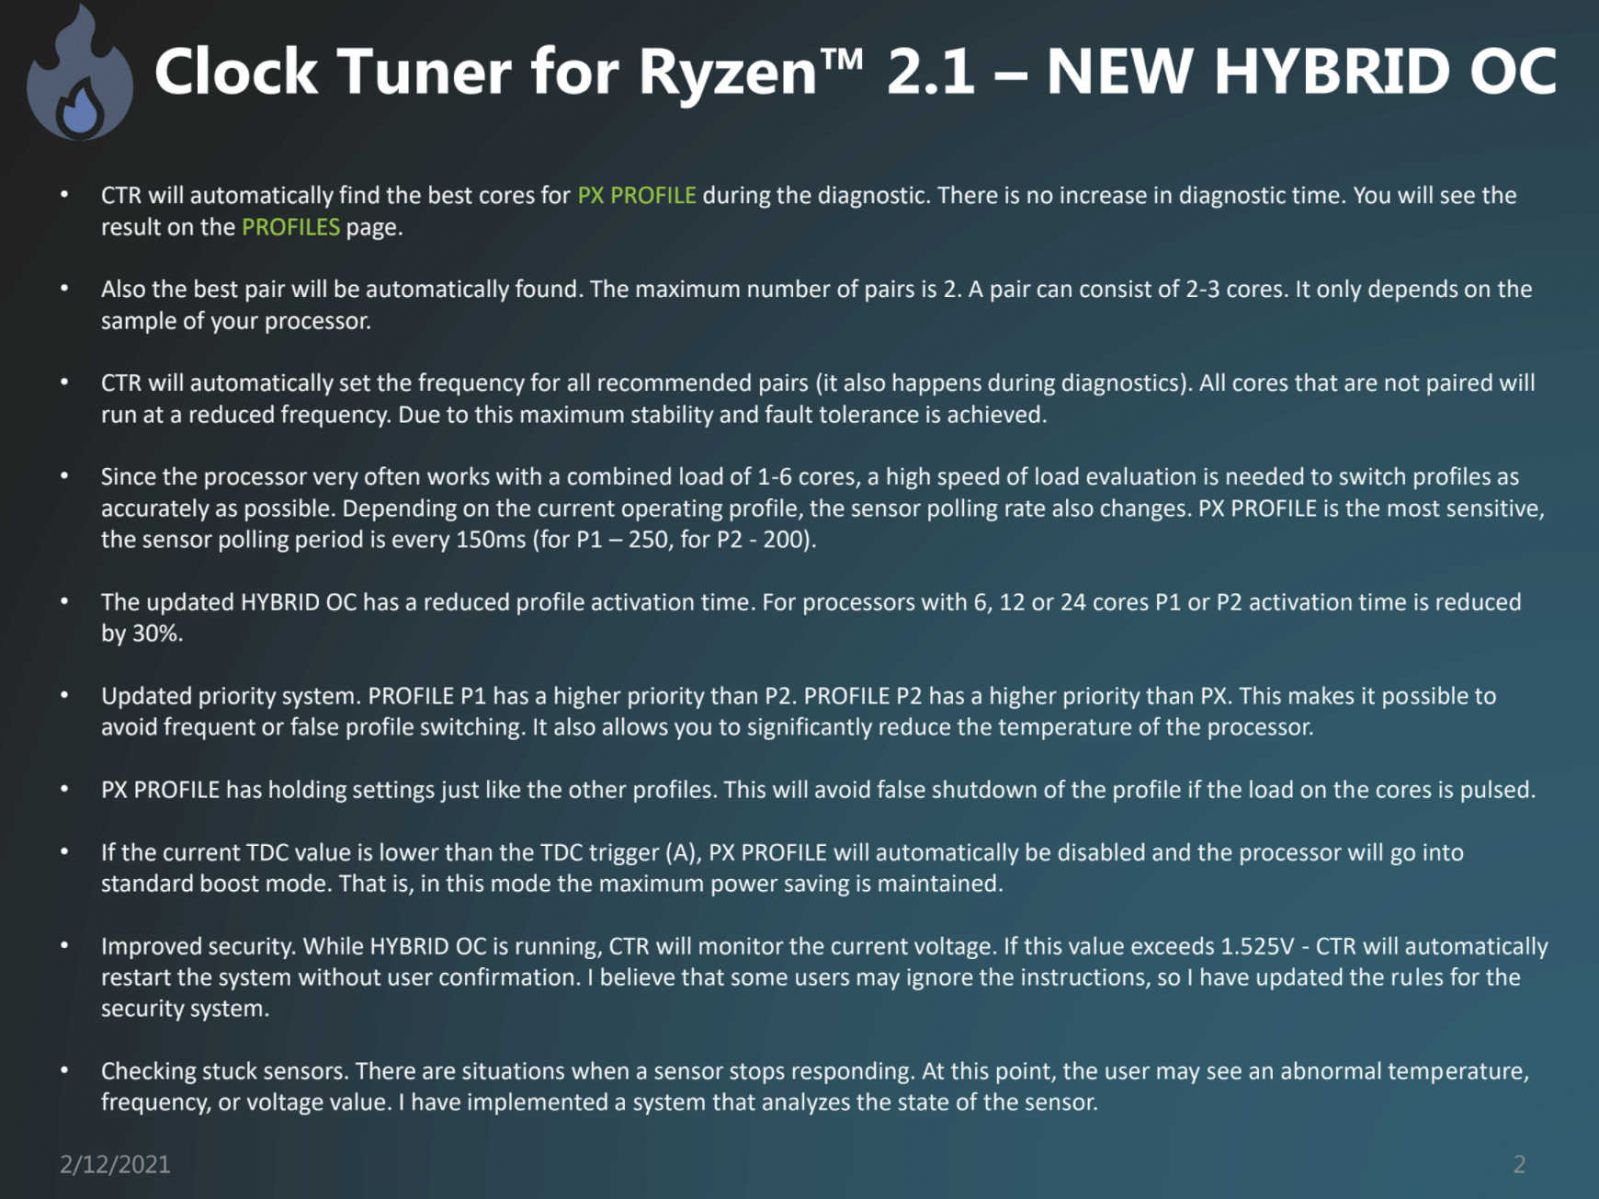 Clock-Tuner-For-Ryzen-2.1-Hybrid-OC-2.jpg